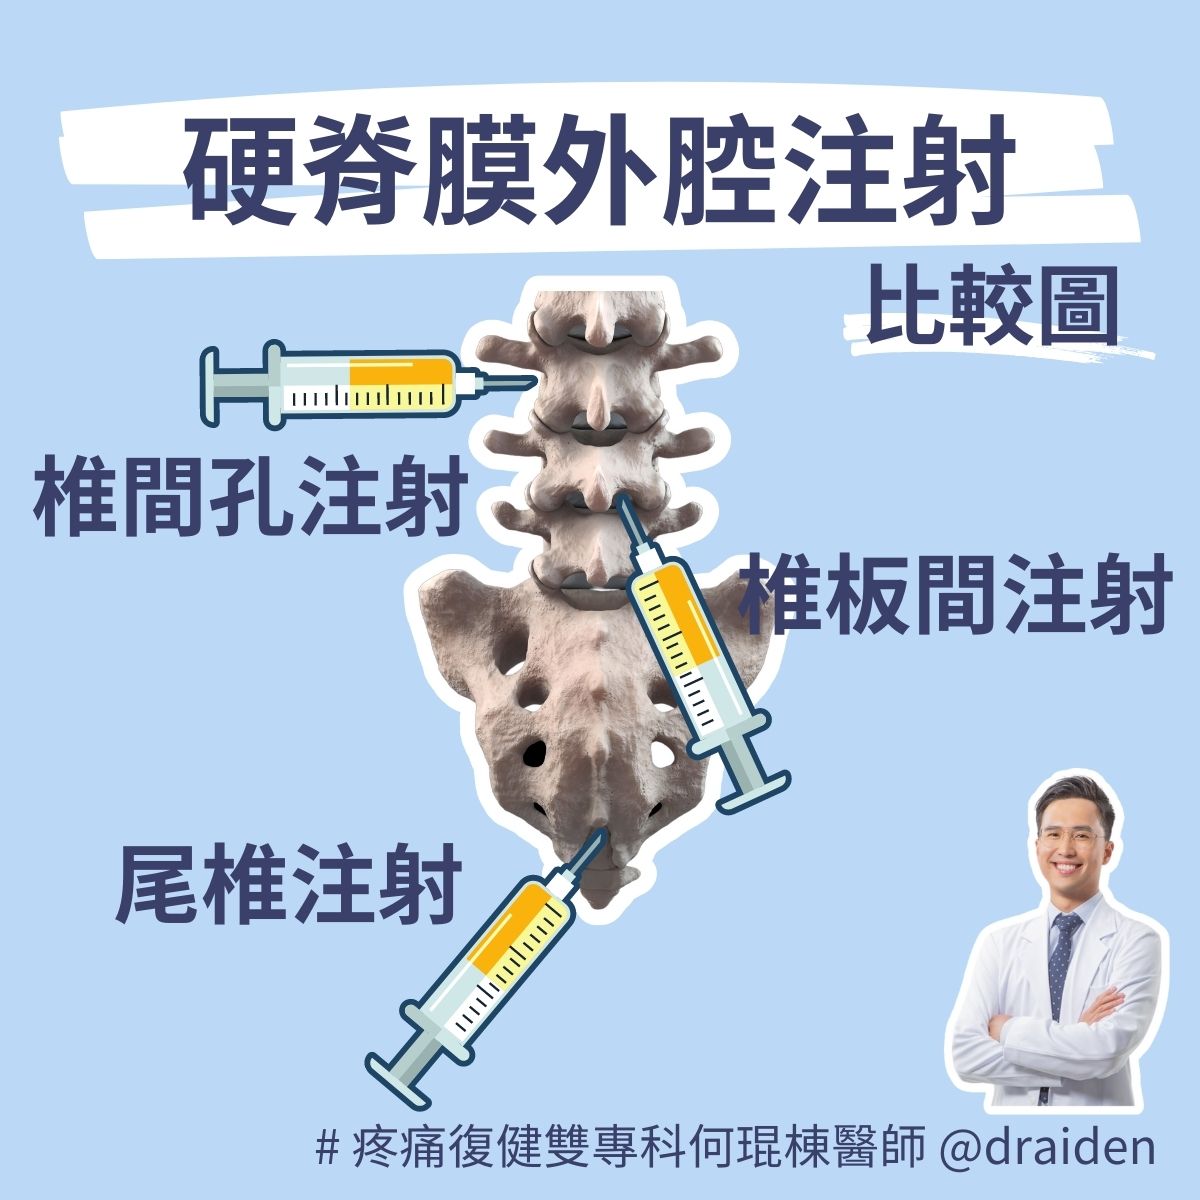 硬脊膜外腔注射包含椎間孔注射、椎板間注射、尾椎注射